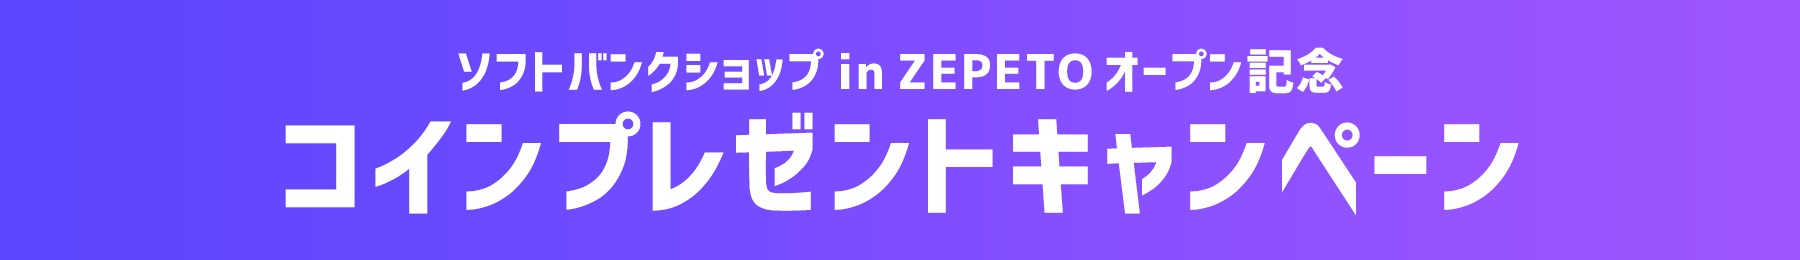 ソフトバンクショップ in ZEPETOオープン記念